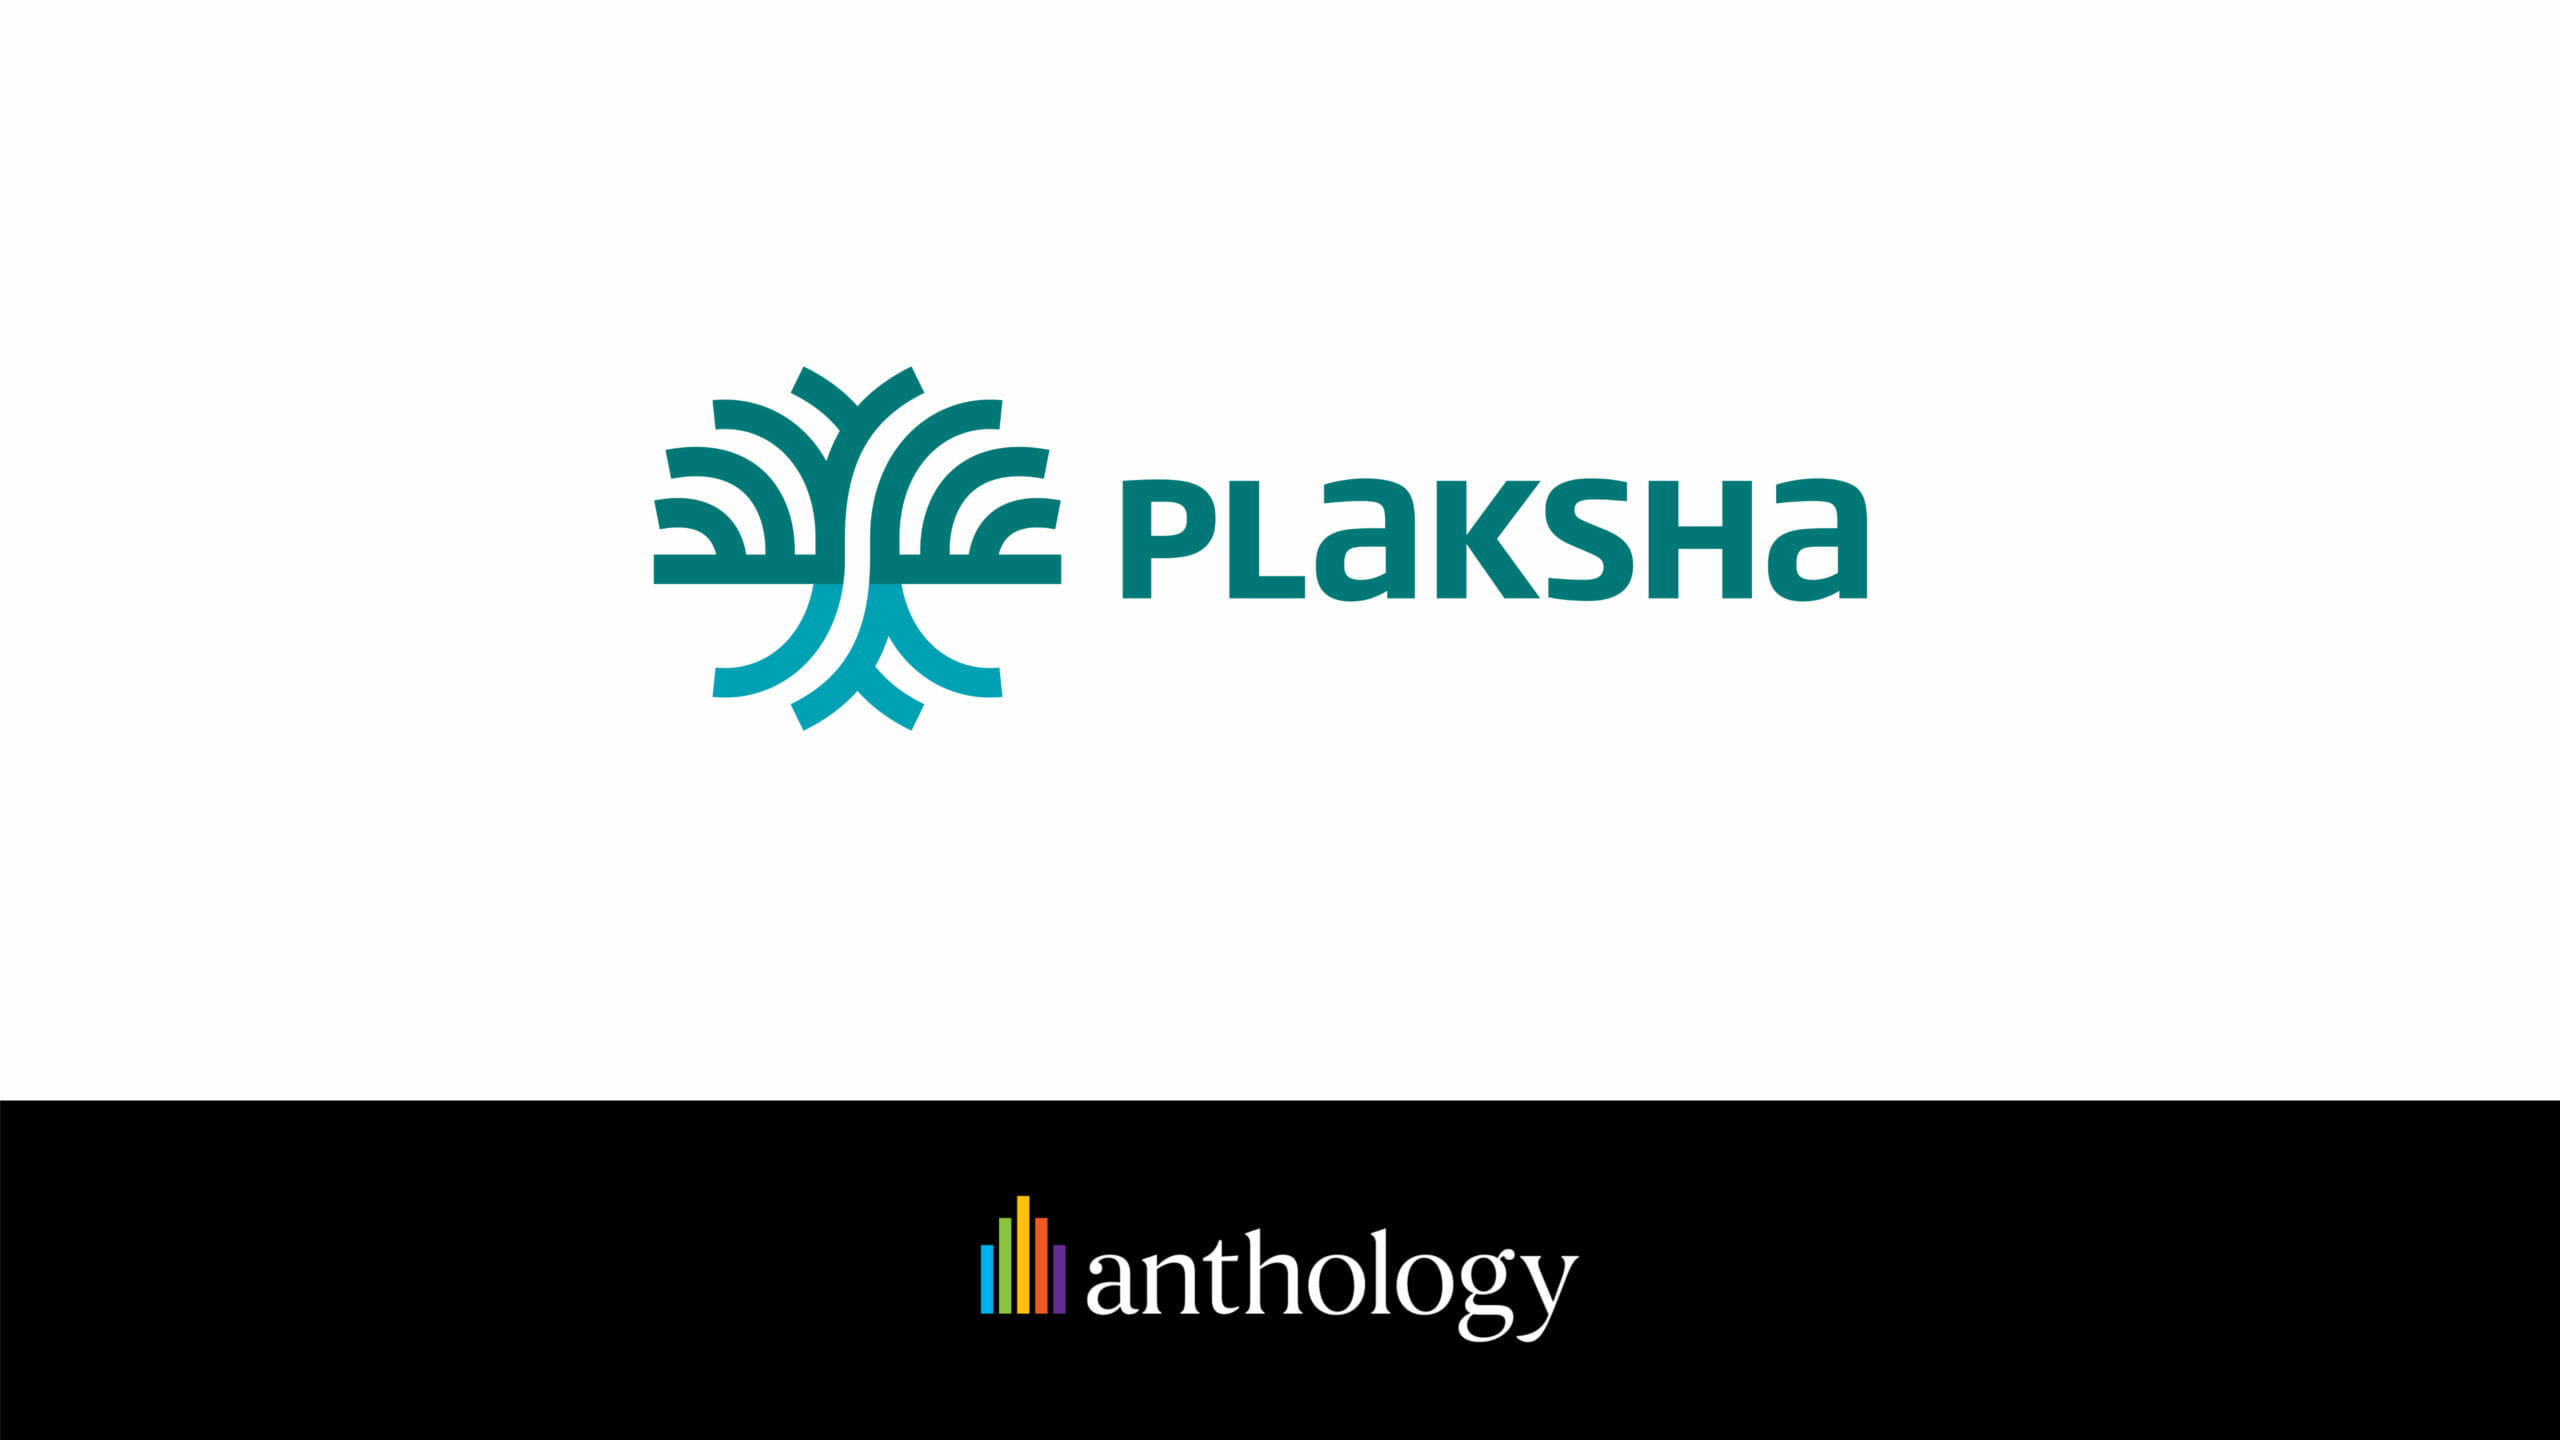 Plaksha logo lockup with the Anthology logo